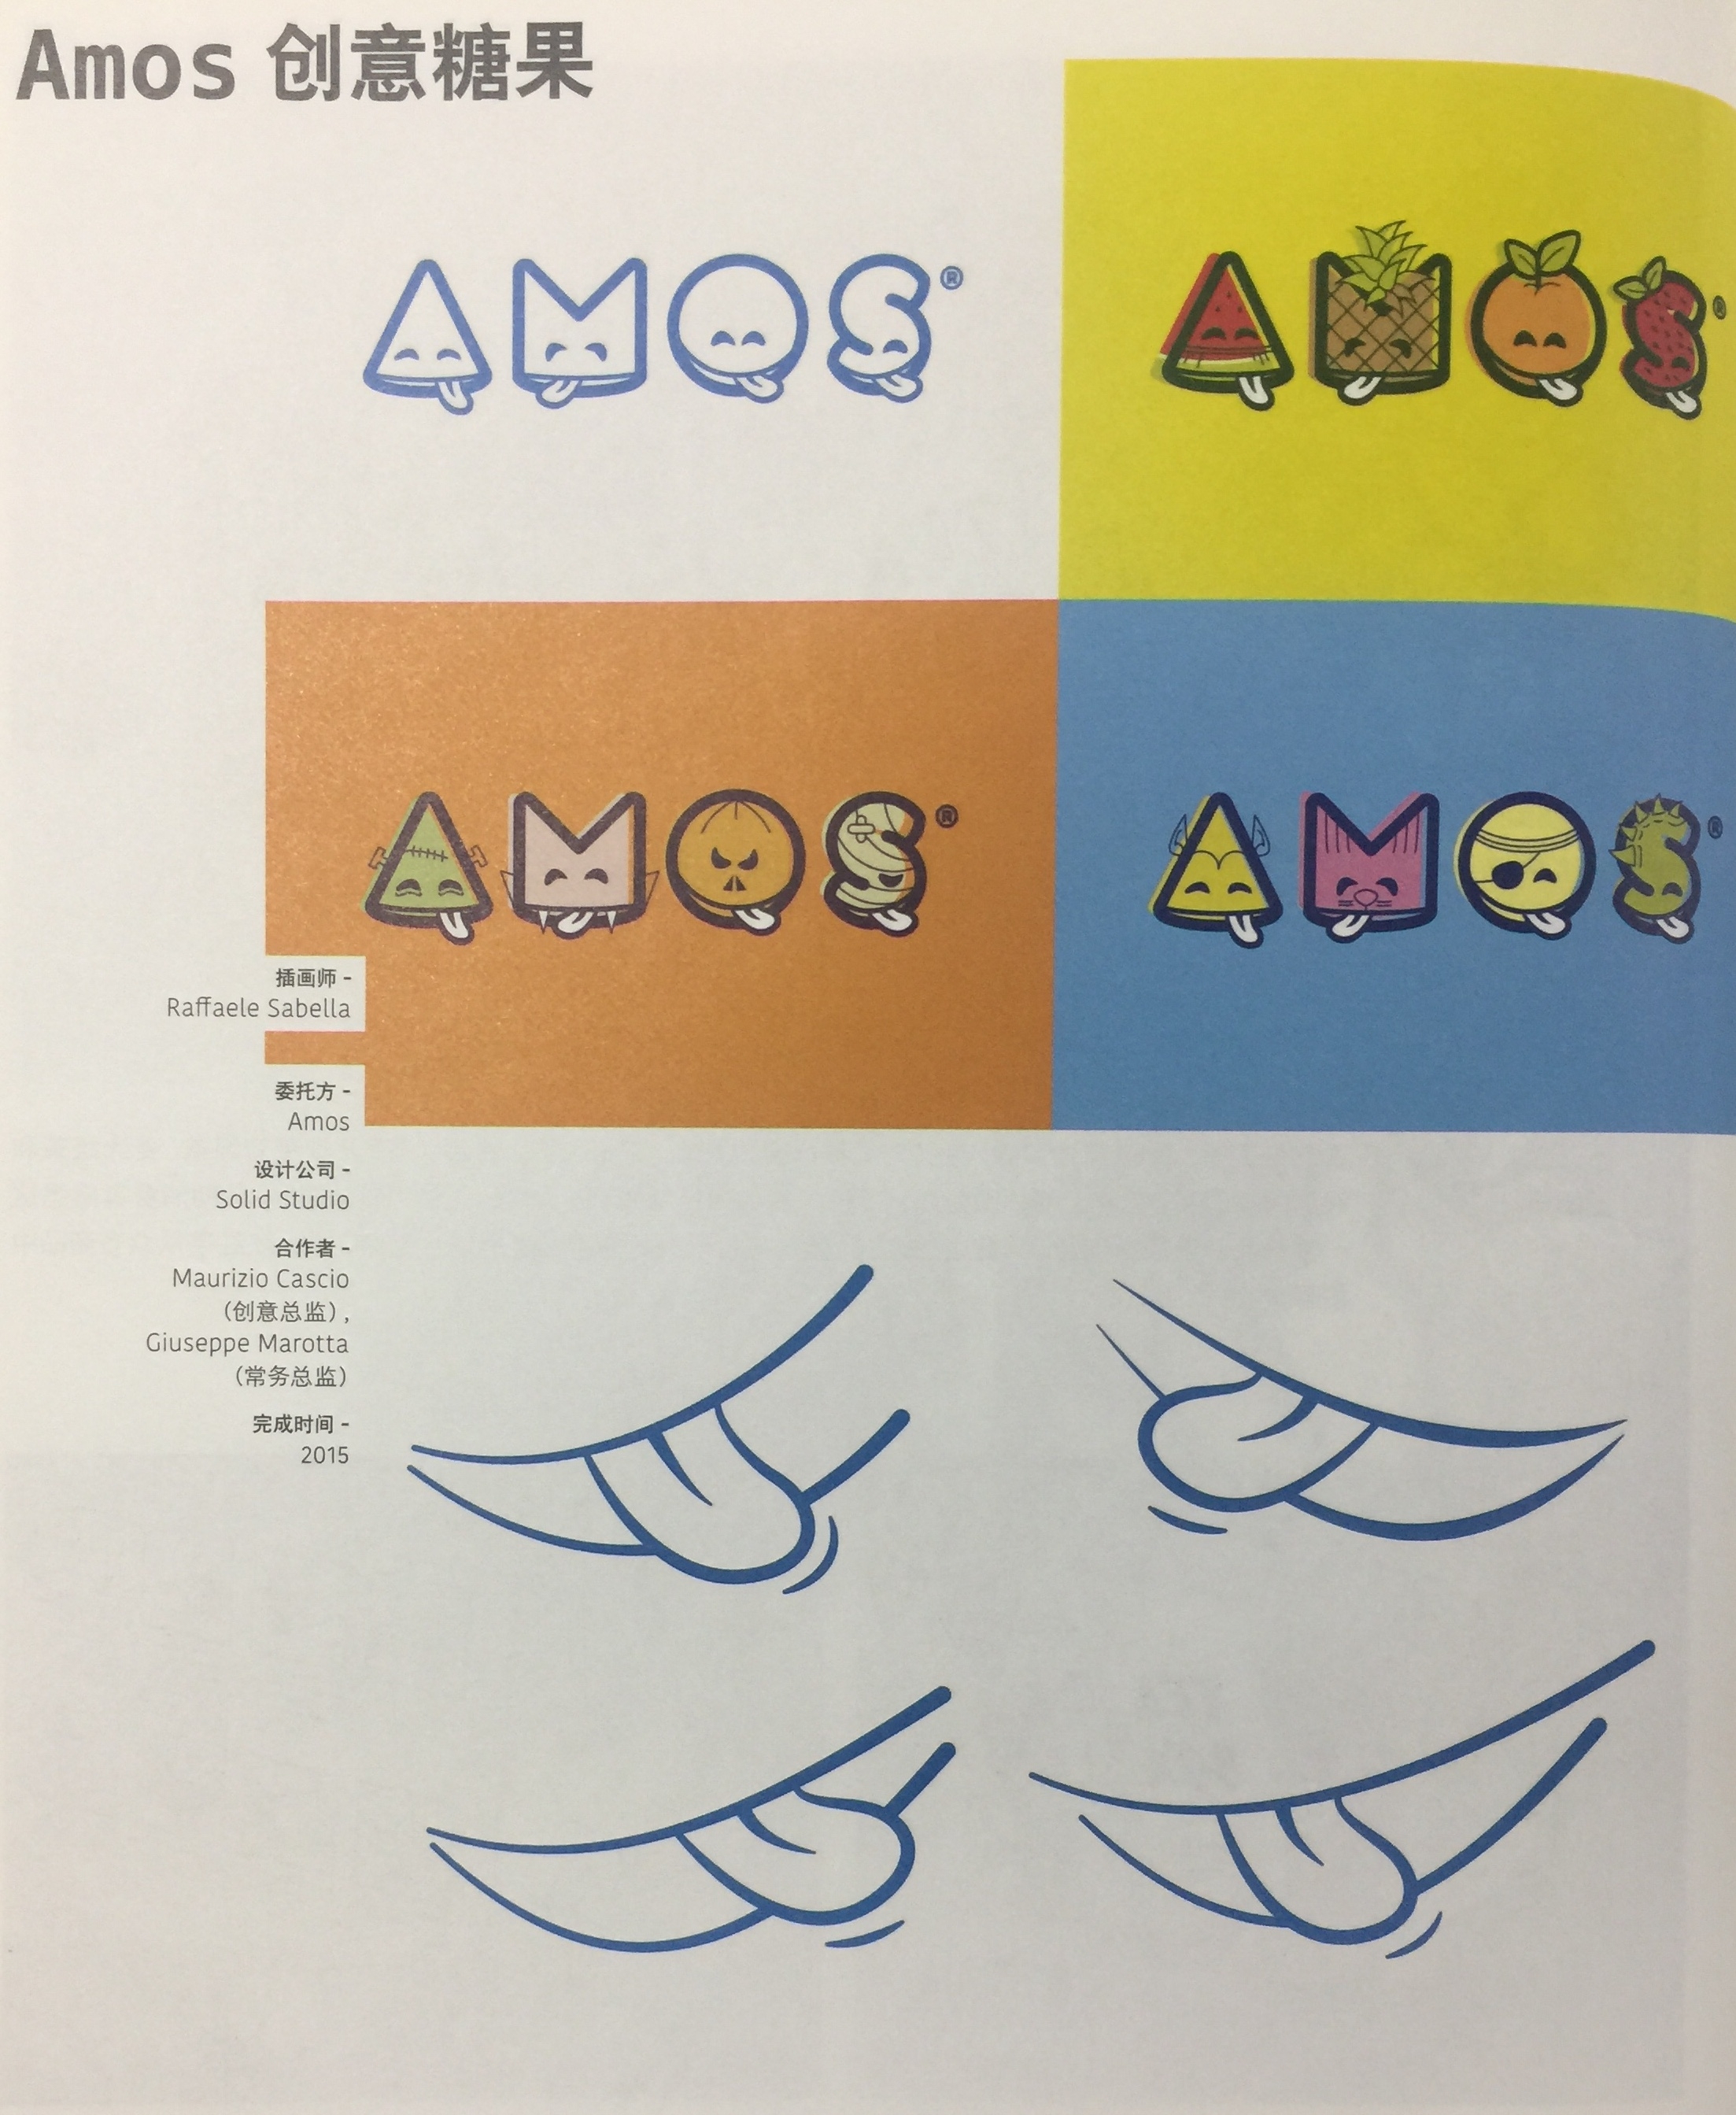 香港儿童创意糖果品牌Amos——食品插画包装设计